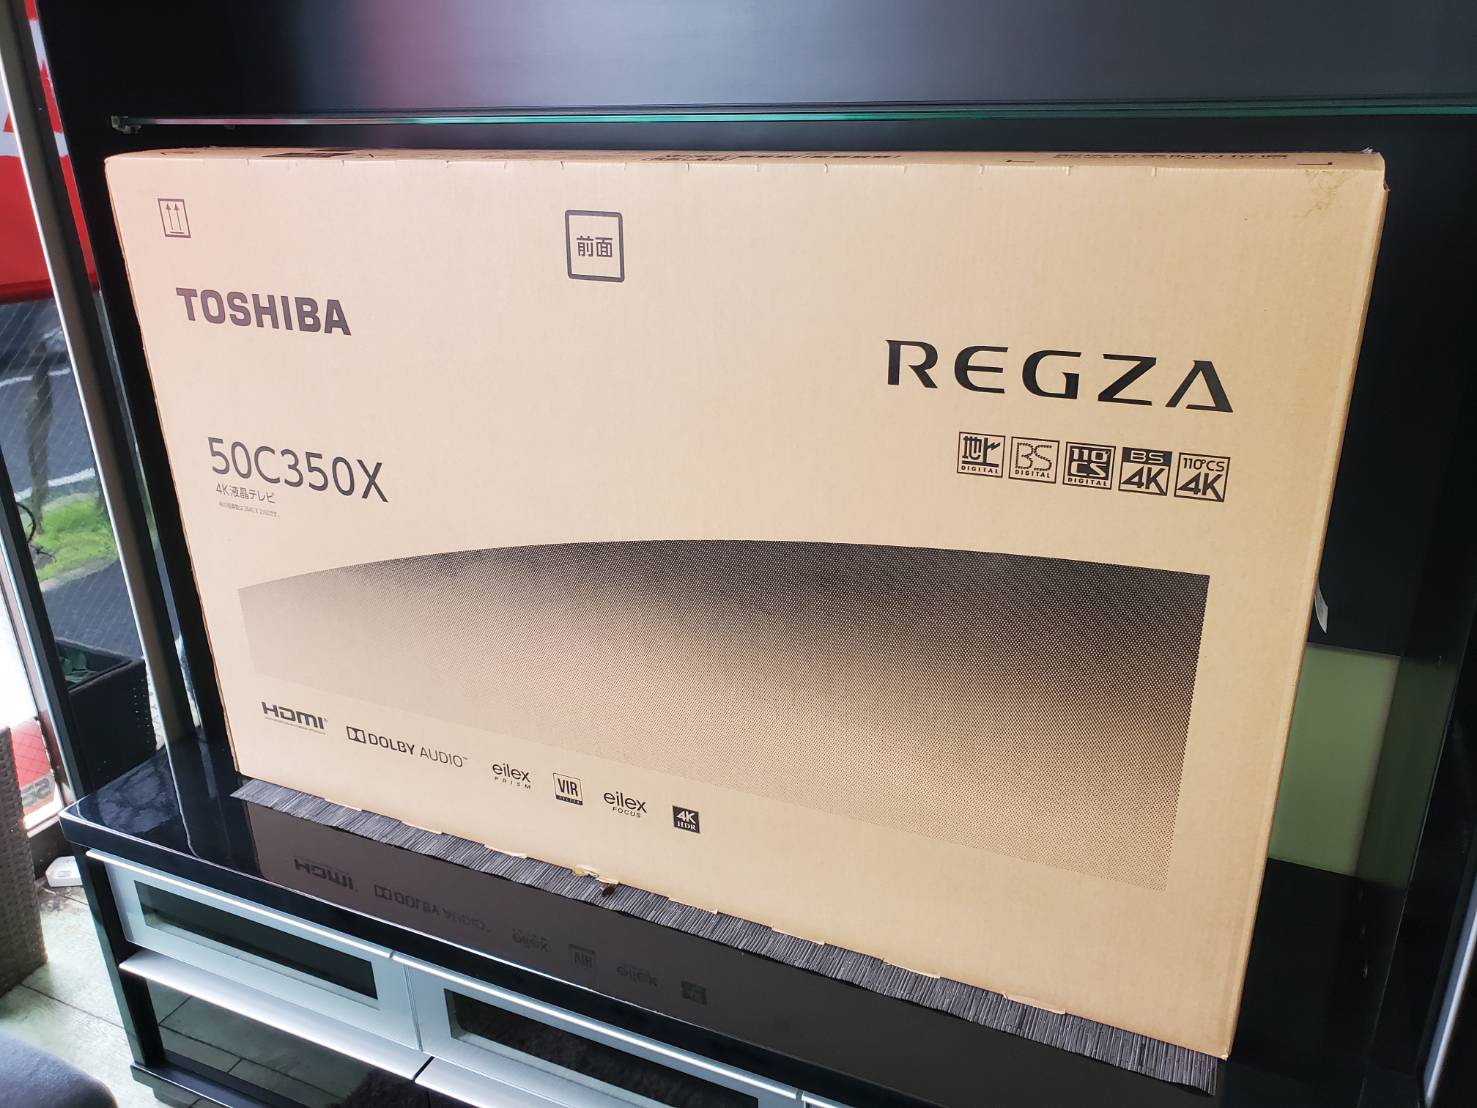 東芝 REGZA 50c350x 4K 50インチ - テレビ